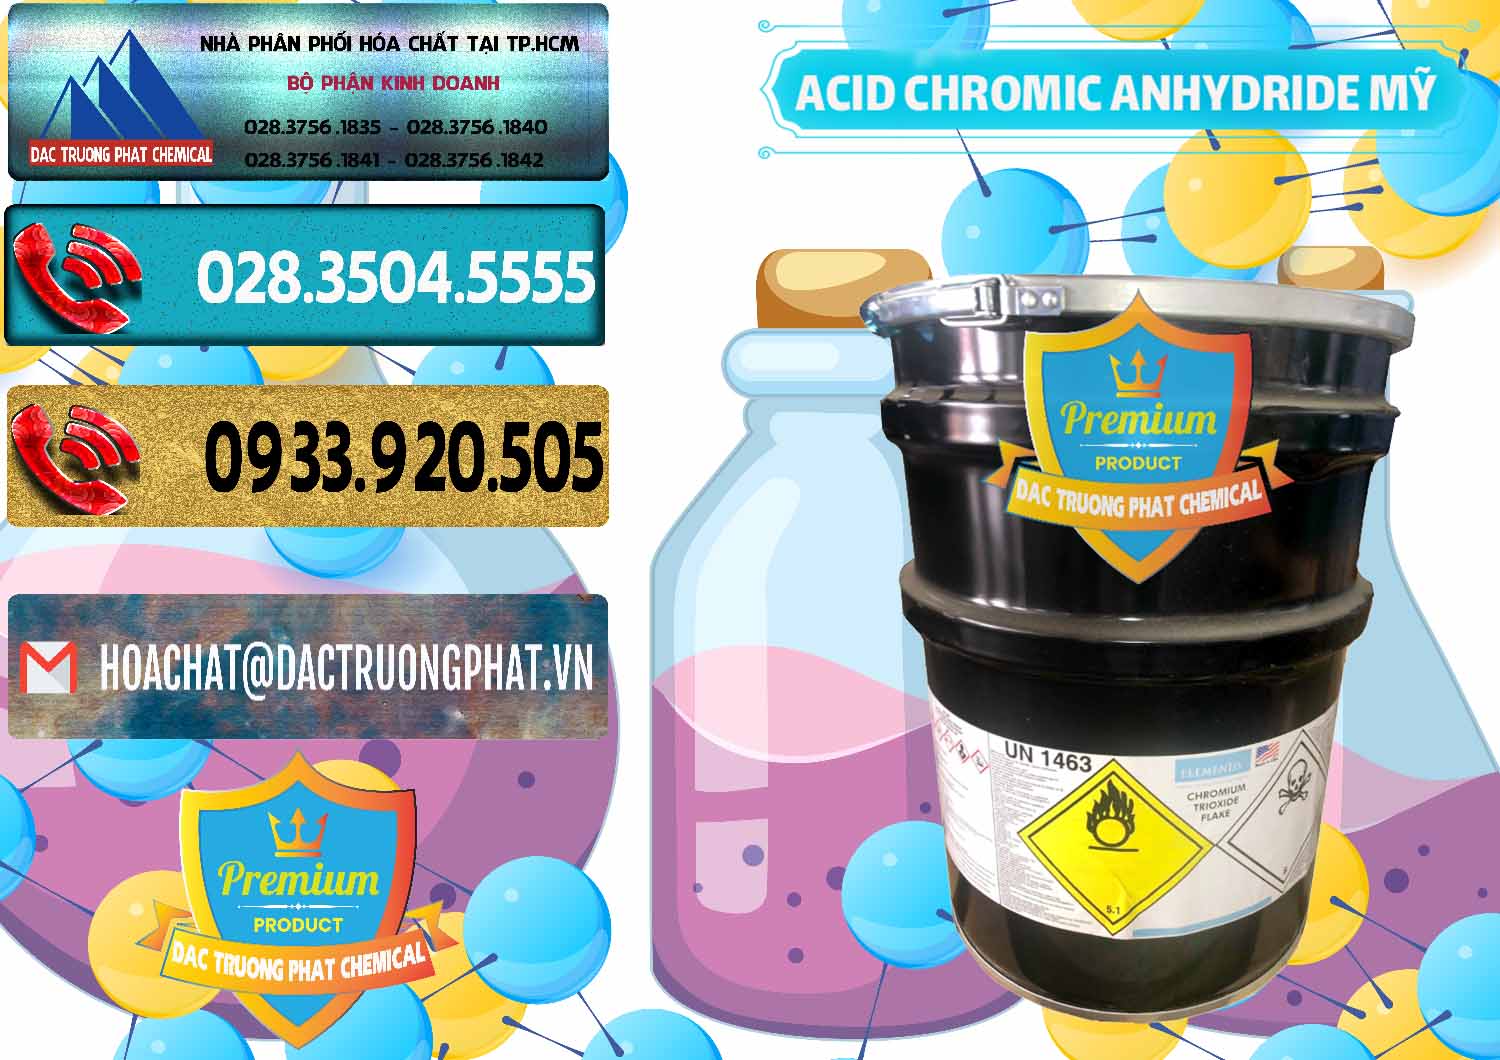 Chuyên bán - phân phối Acid Chromic Anhydride - Cromic CRO3 USA Mỹ - 0364 - Cung cấp _ nhập khẩu hóa chất tại TP.HCM - hoachatdetnhuom.com